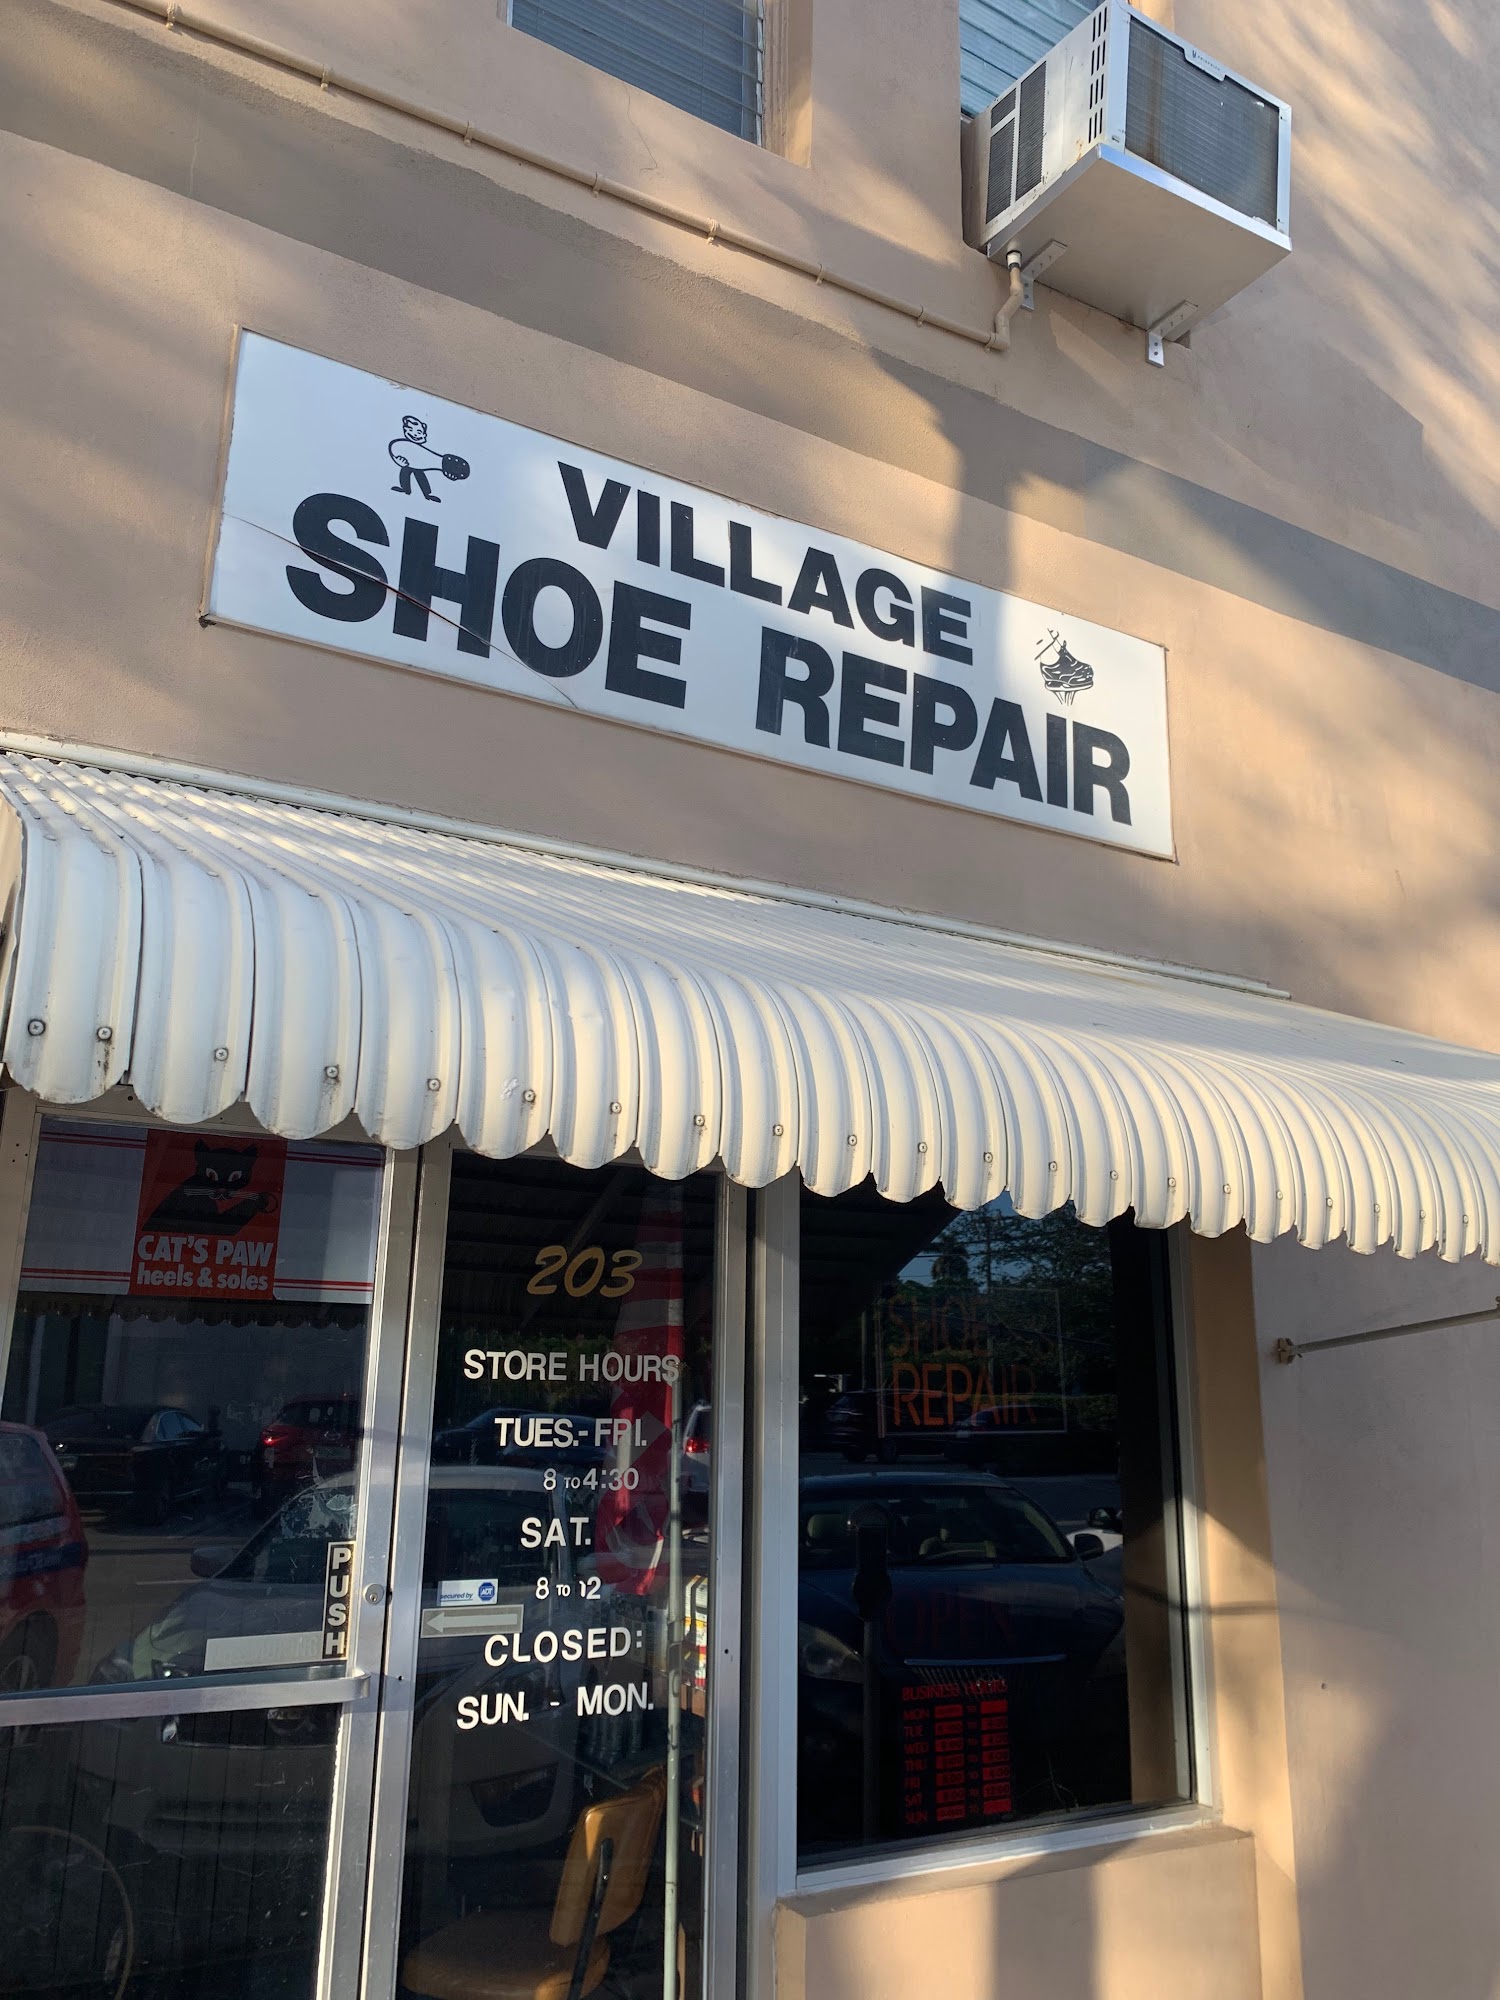 Village Shoe Repair 203 NE 97th St, Miami Shores Florida 33138